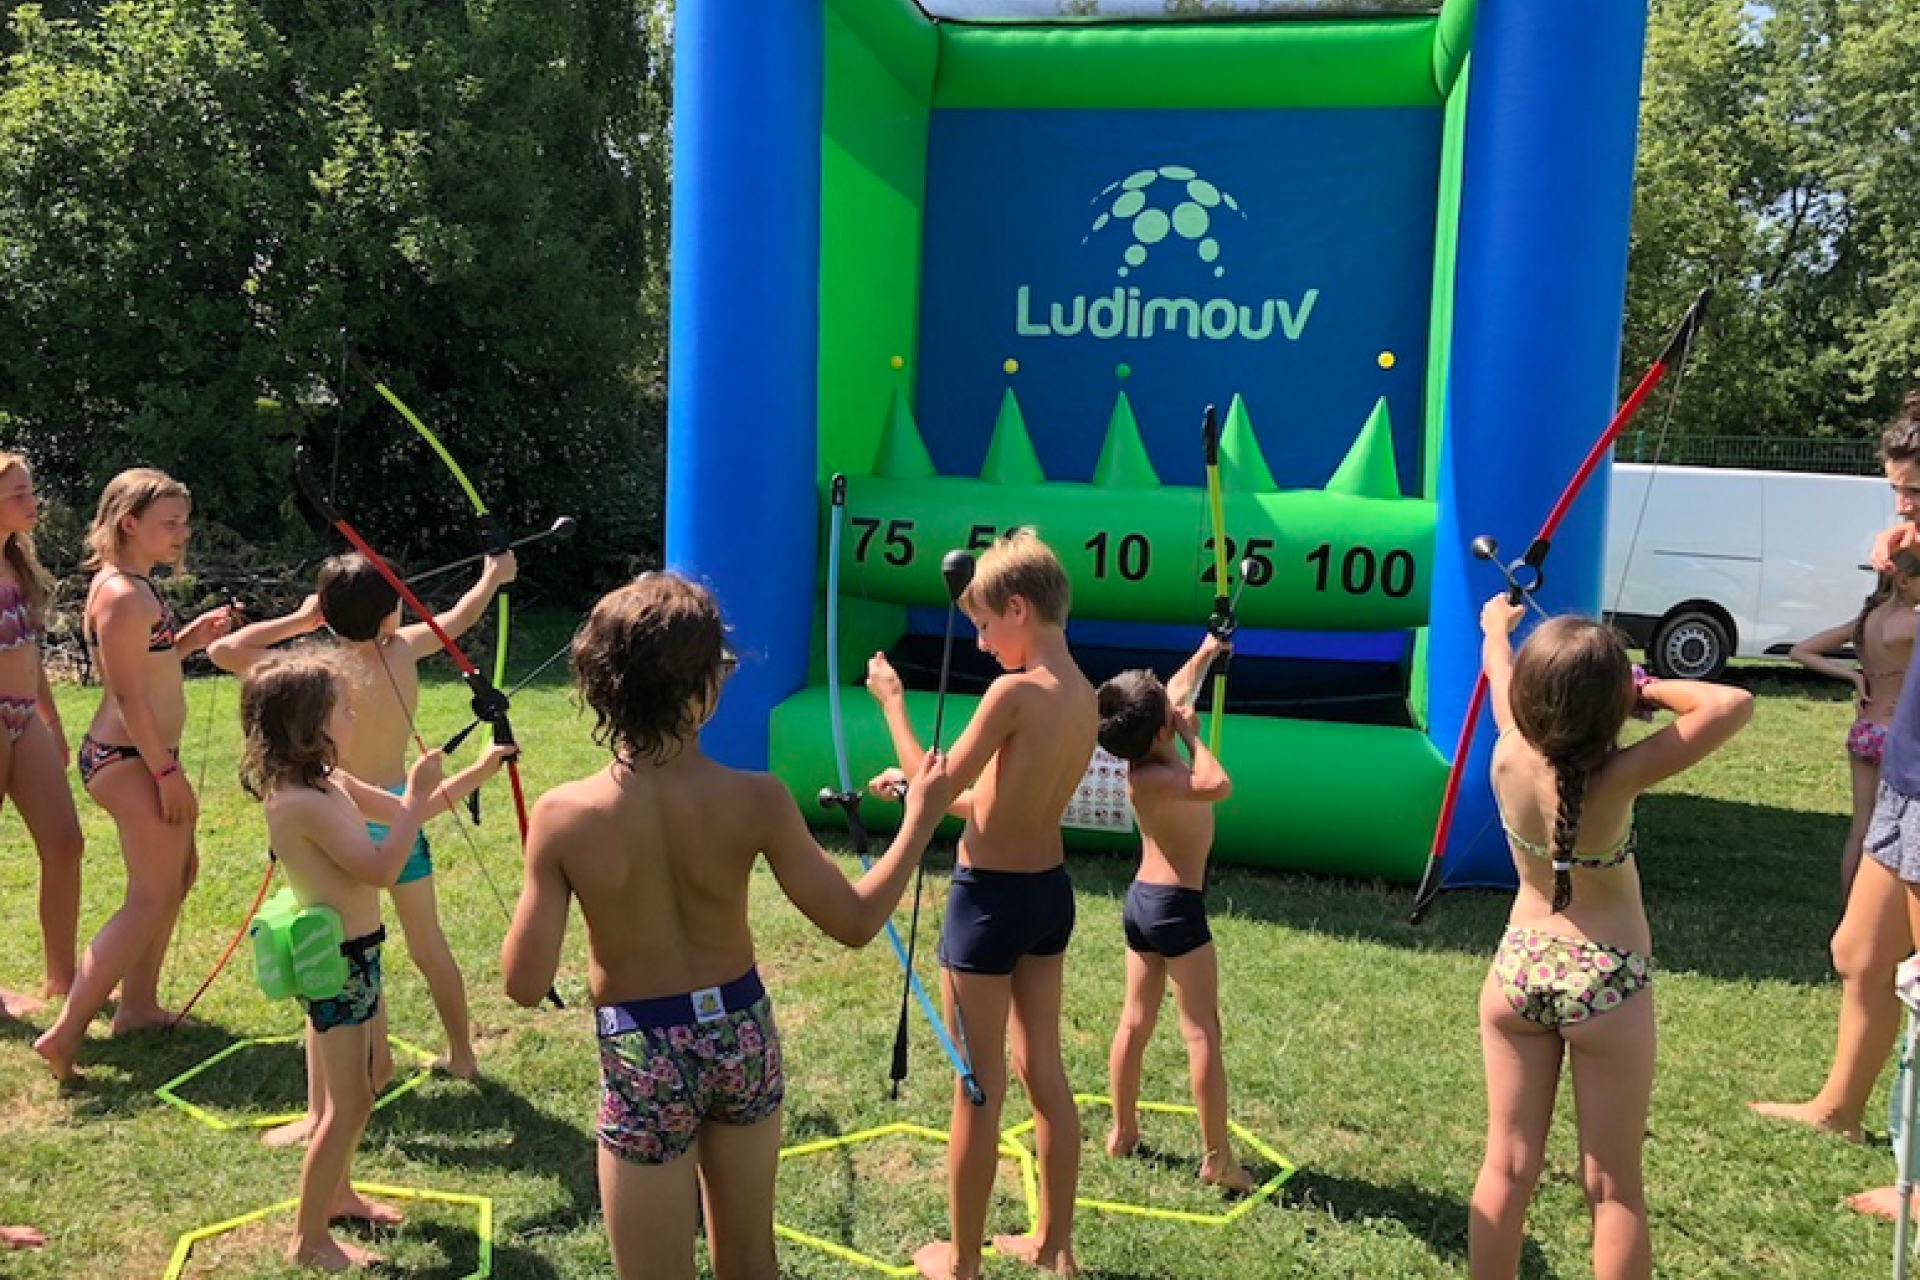 Stand de tir à l'arc gonflable en plein air pour une animation estivale, avec groupe d'enfants tirant à l'arc